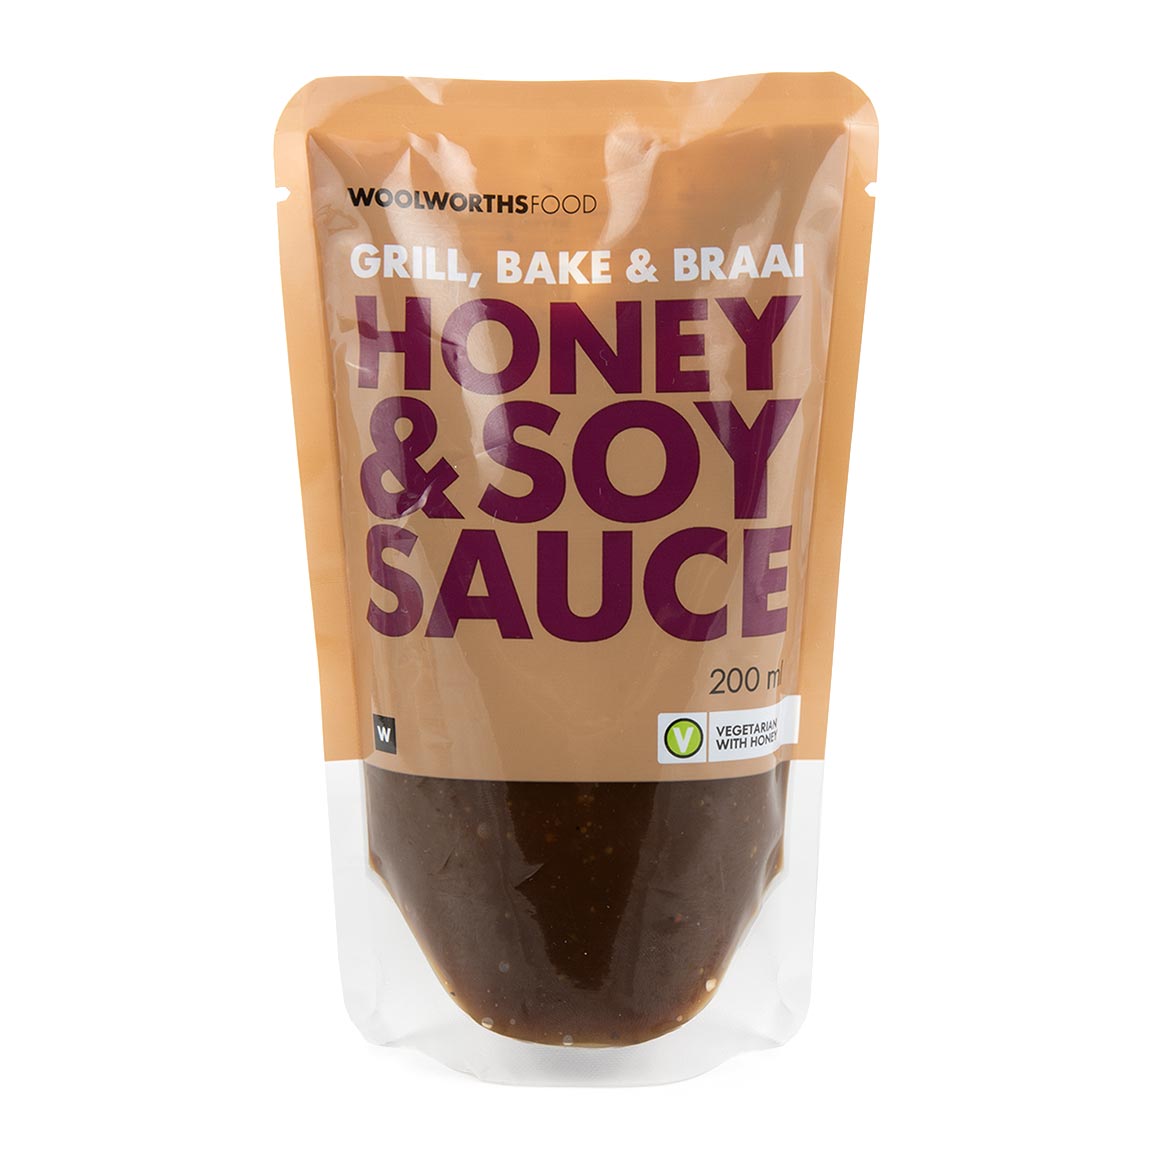 Honey Soy Sauce 200 Ml 20151089 ?V=Ldzt&o=eyJidWNrZXQiOiJ3dy1vbmxpbmUtaW1hZ2UtcmVzaXplIiwia2V5IjoiaW1hZ2VzL2VsYXN0aWNlcmEvcHJvZHVjdHMvaGVyby8yMDEzLTA5LTE3LzIwMTUxMDg5X2hlcm8uanBnIn0&